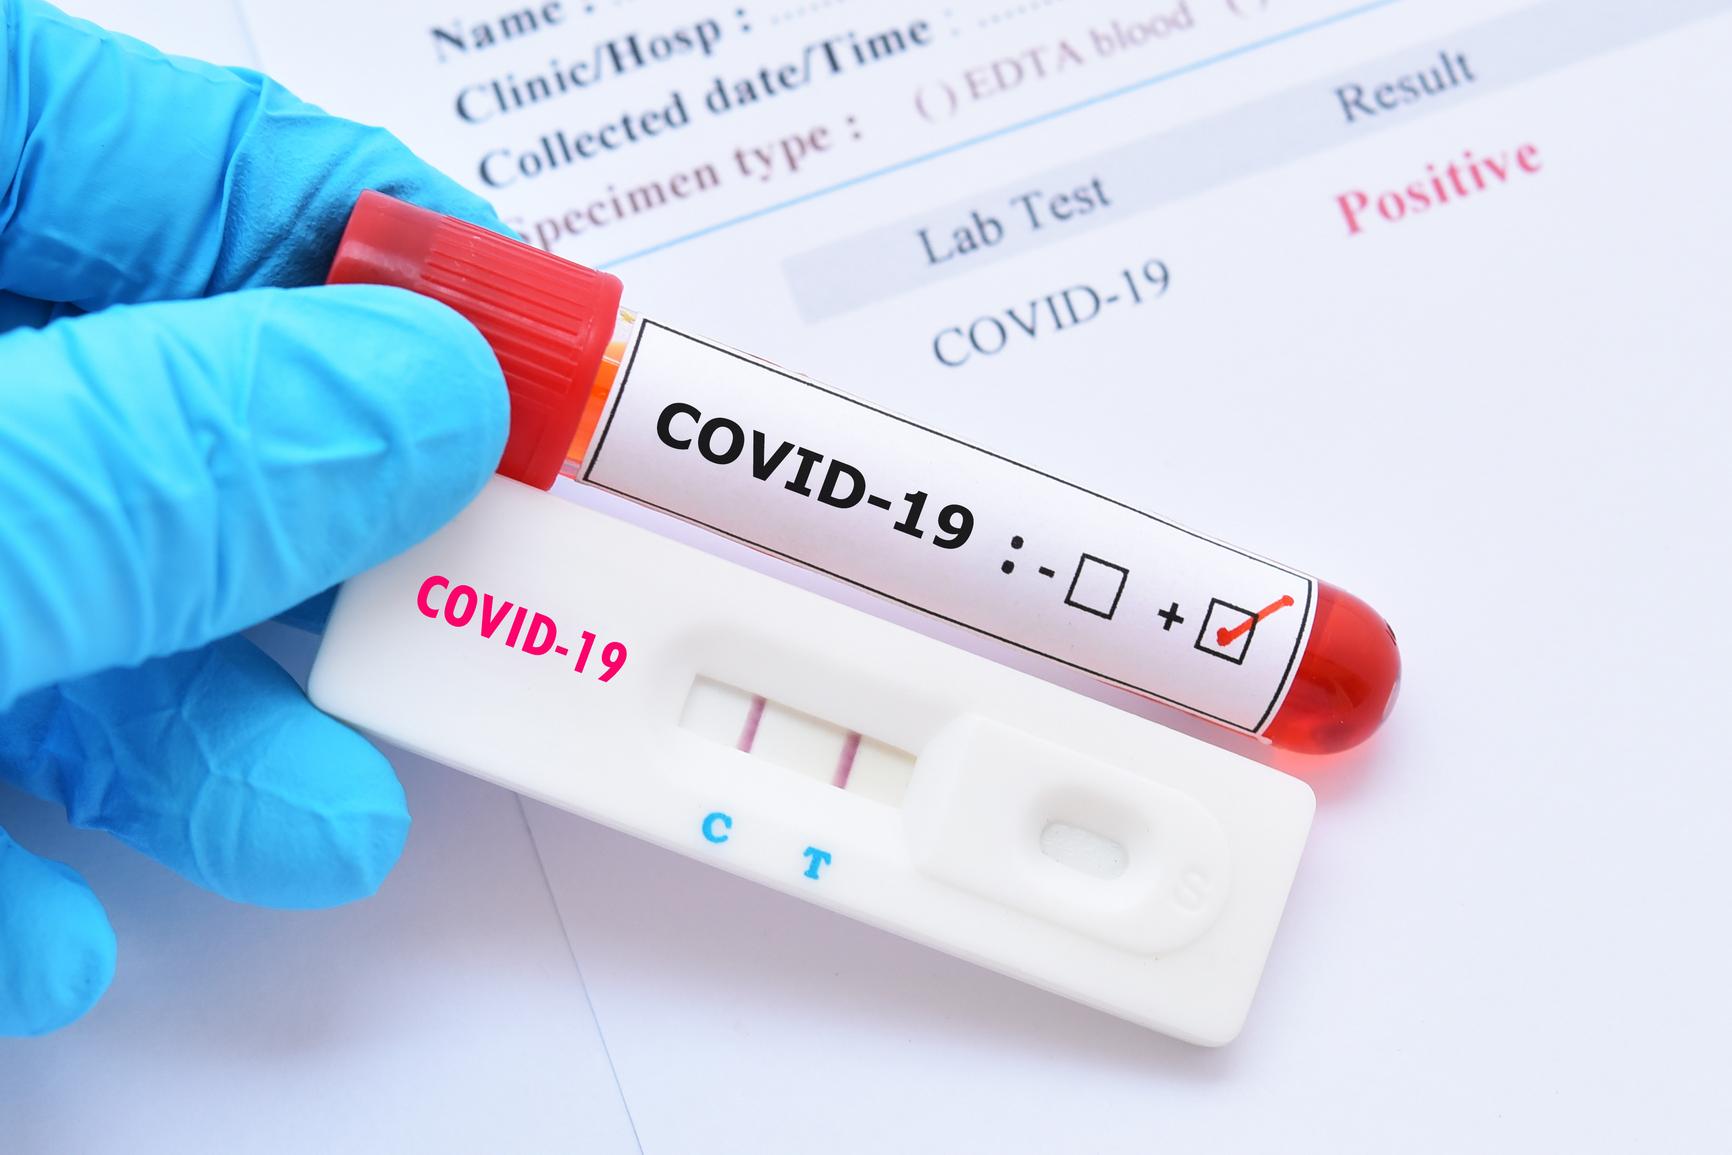 Siete casos de COVID-19 son reportados por Salud Pública